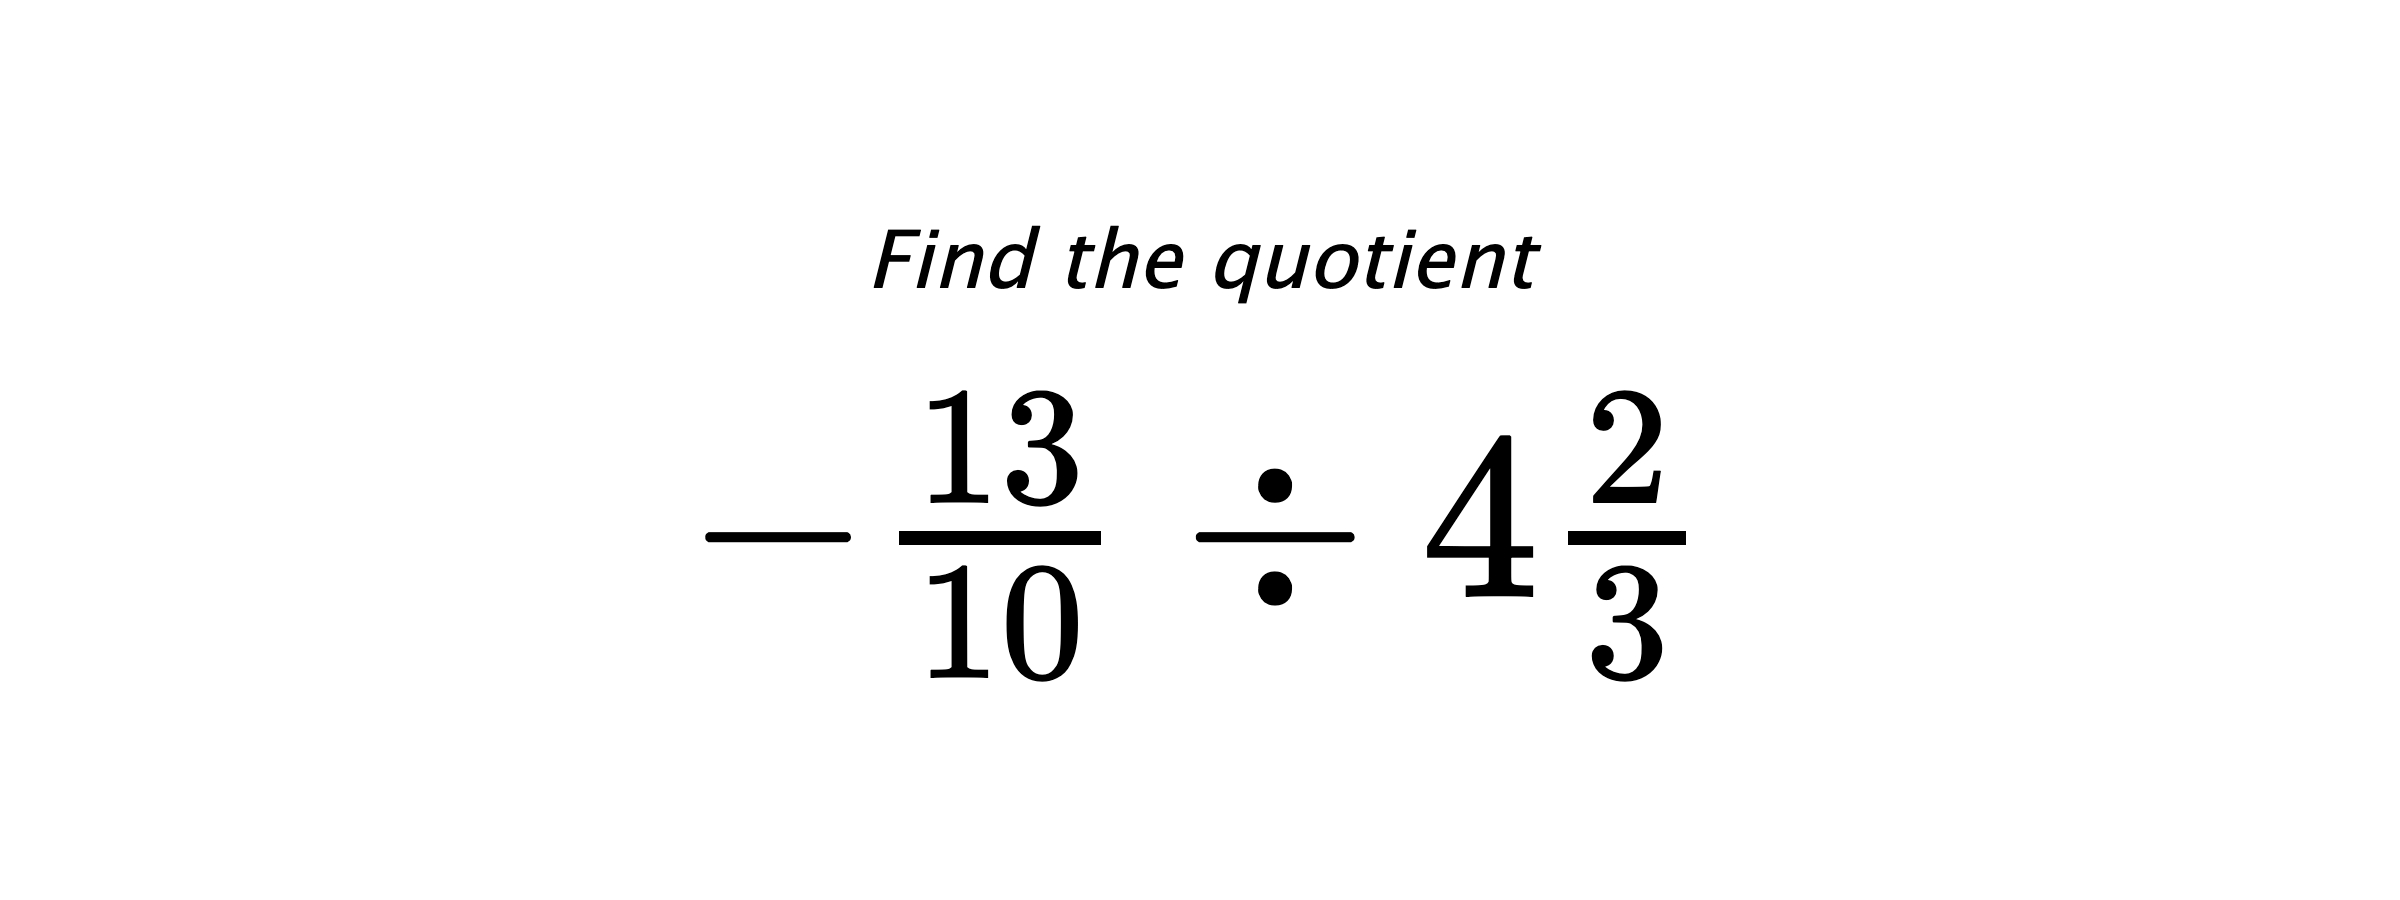 Find the quotient $ -\frac{13}{10} \div 4\frac{2}{3} $